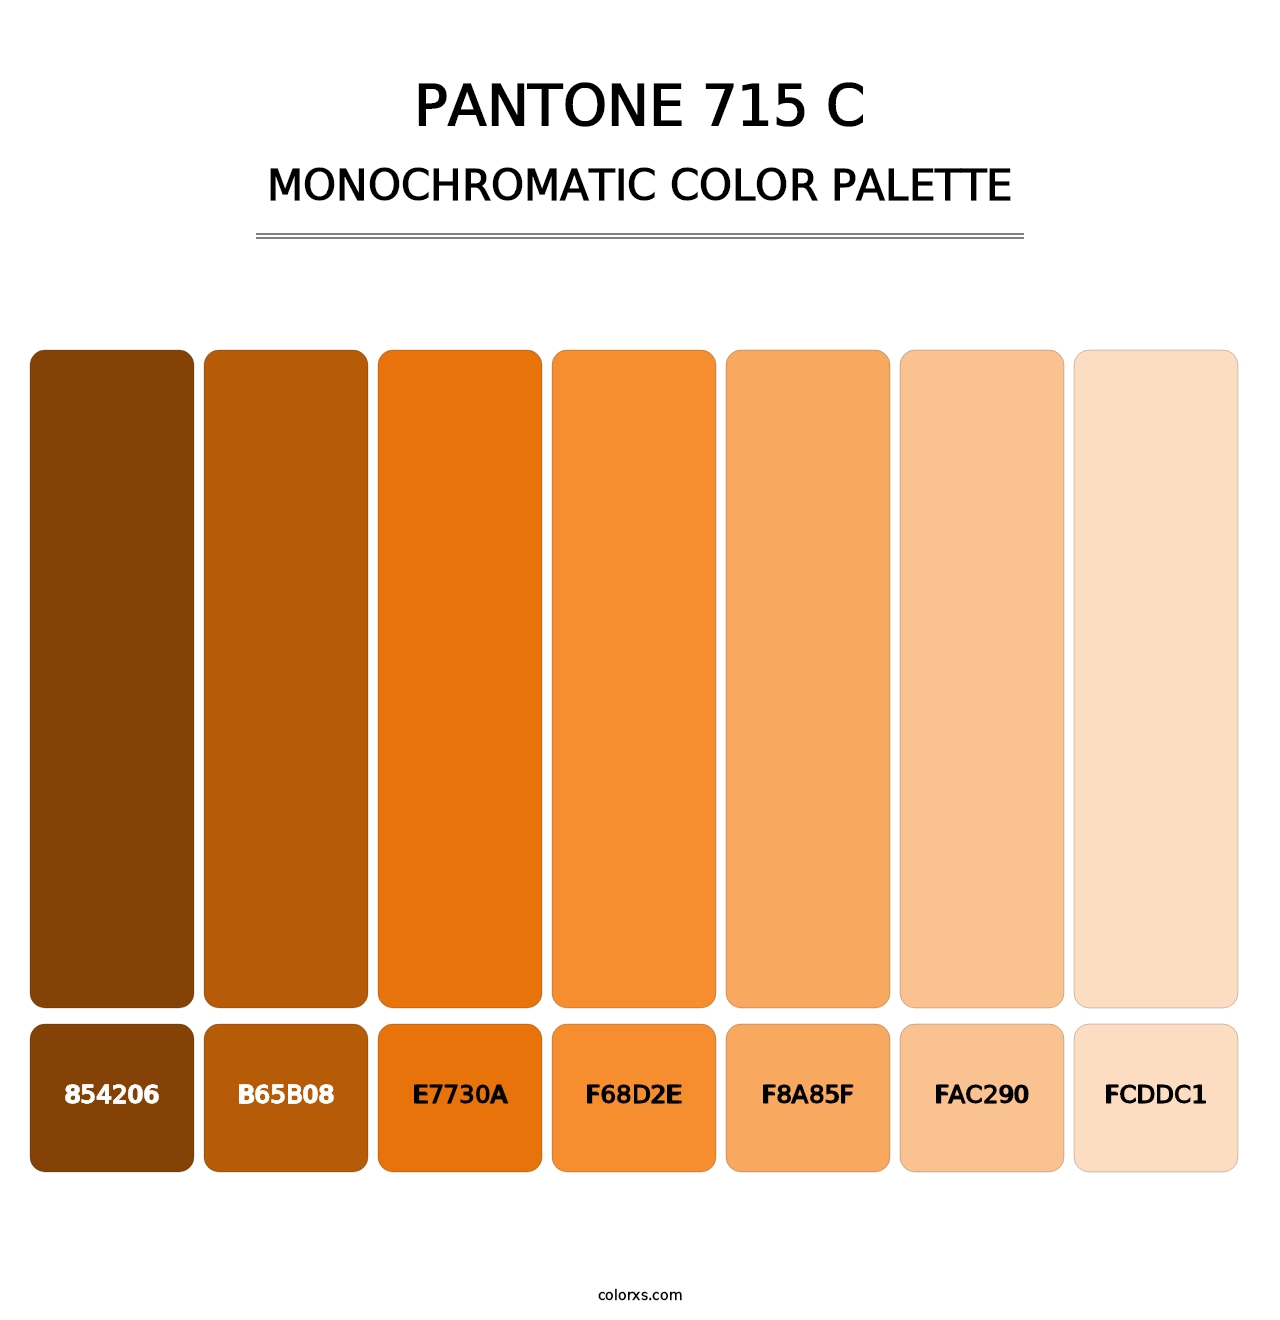 PANTONE 715 C - Monochromatic Color Palette